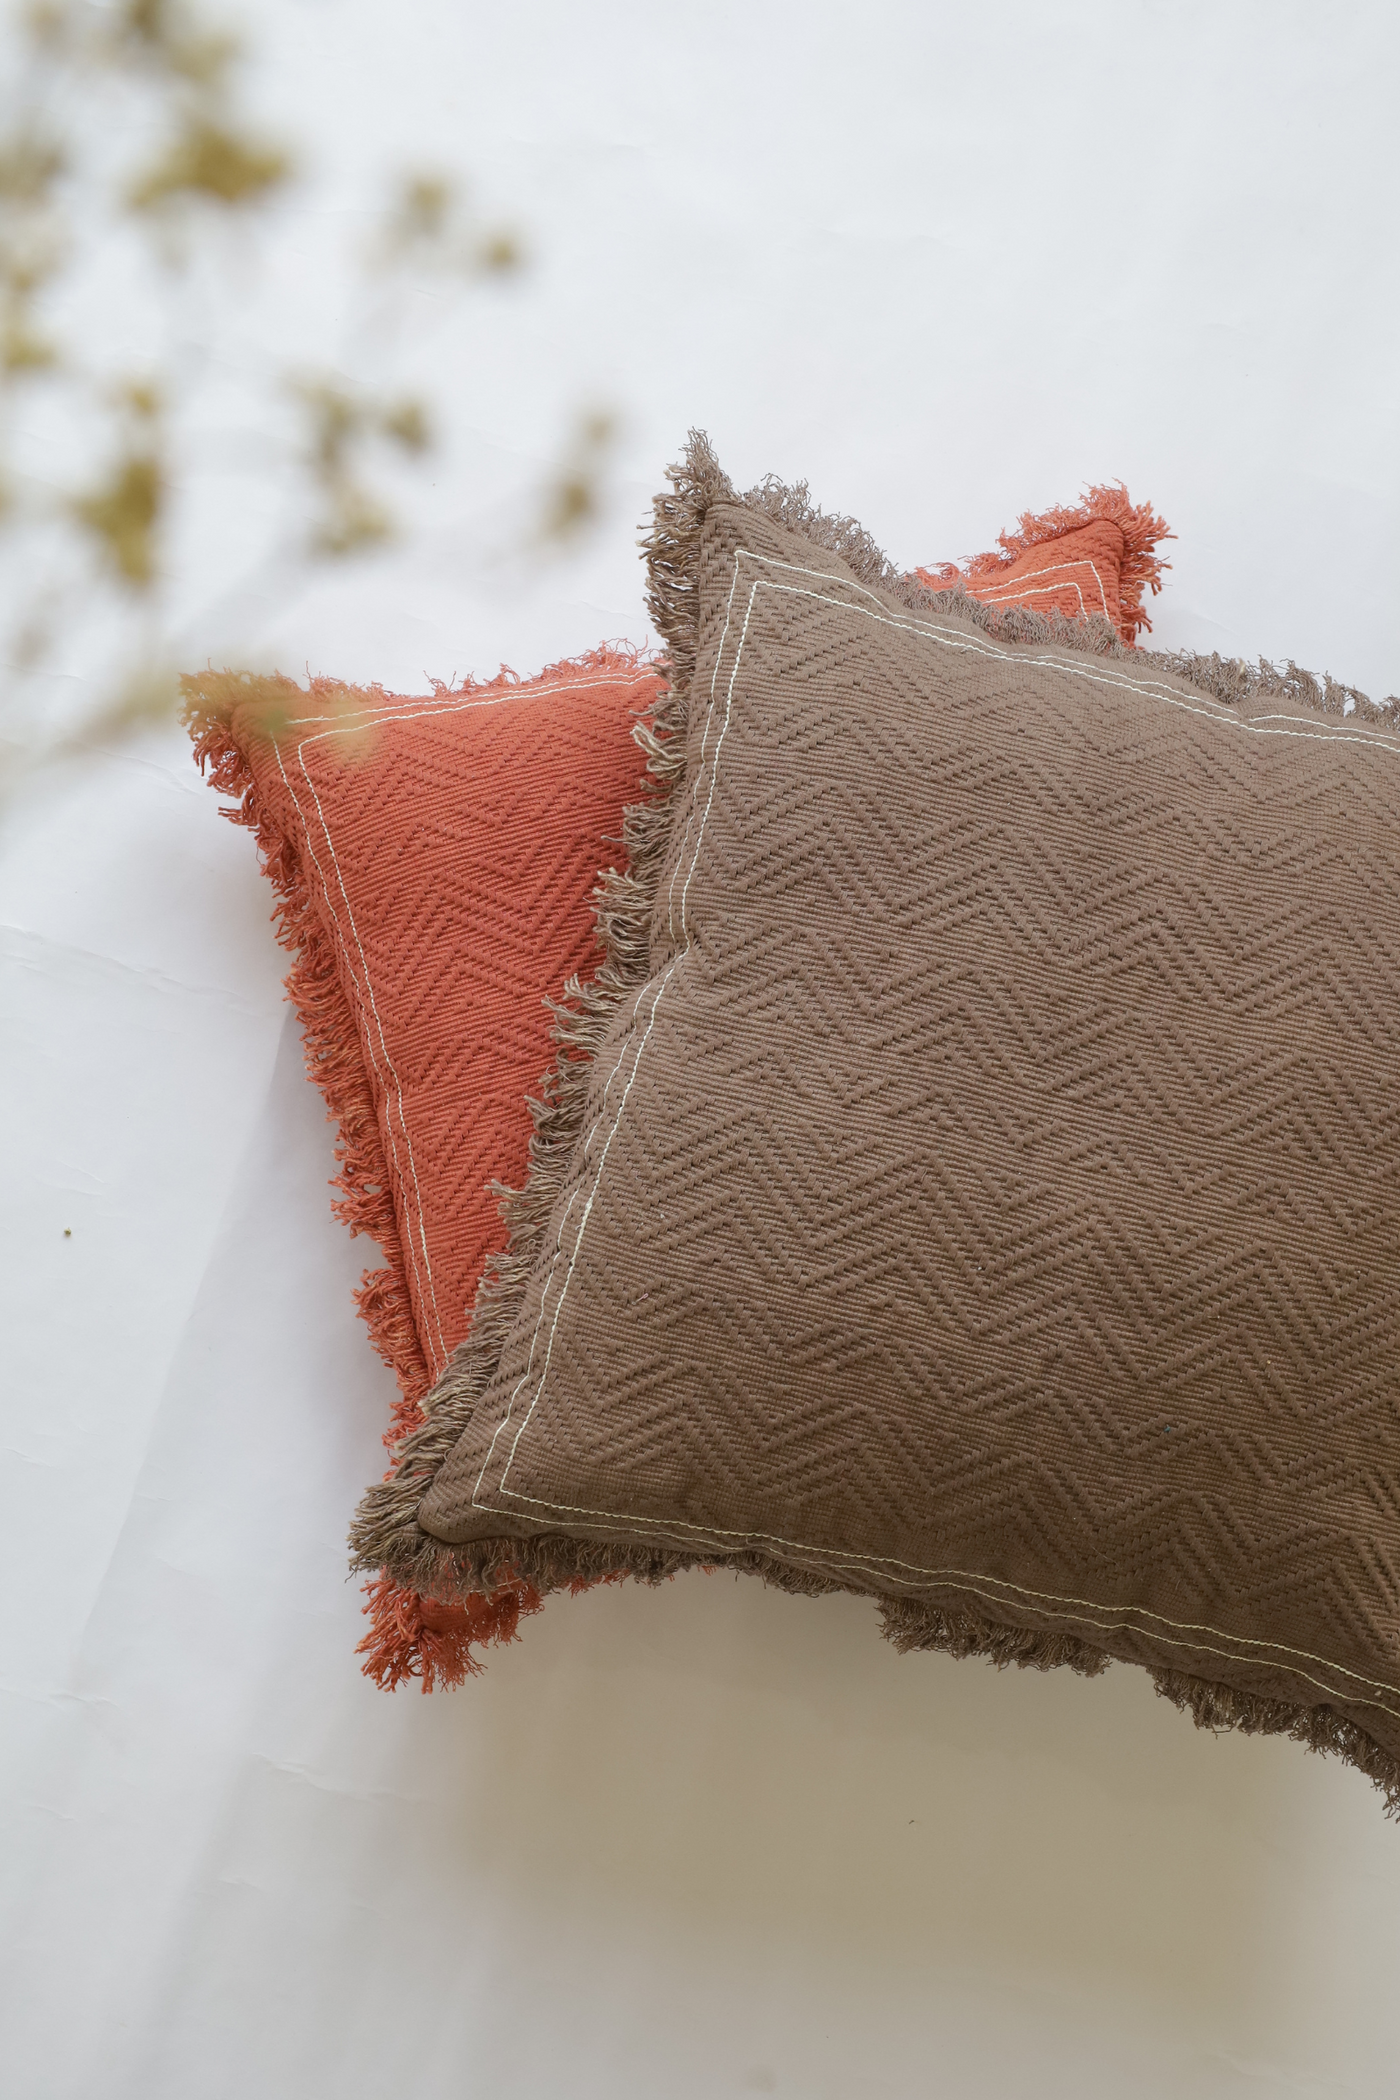 Terracotta cushion